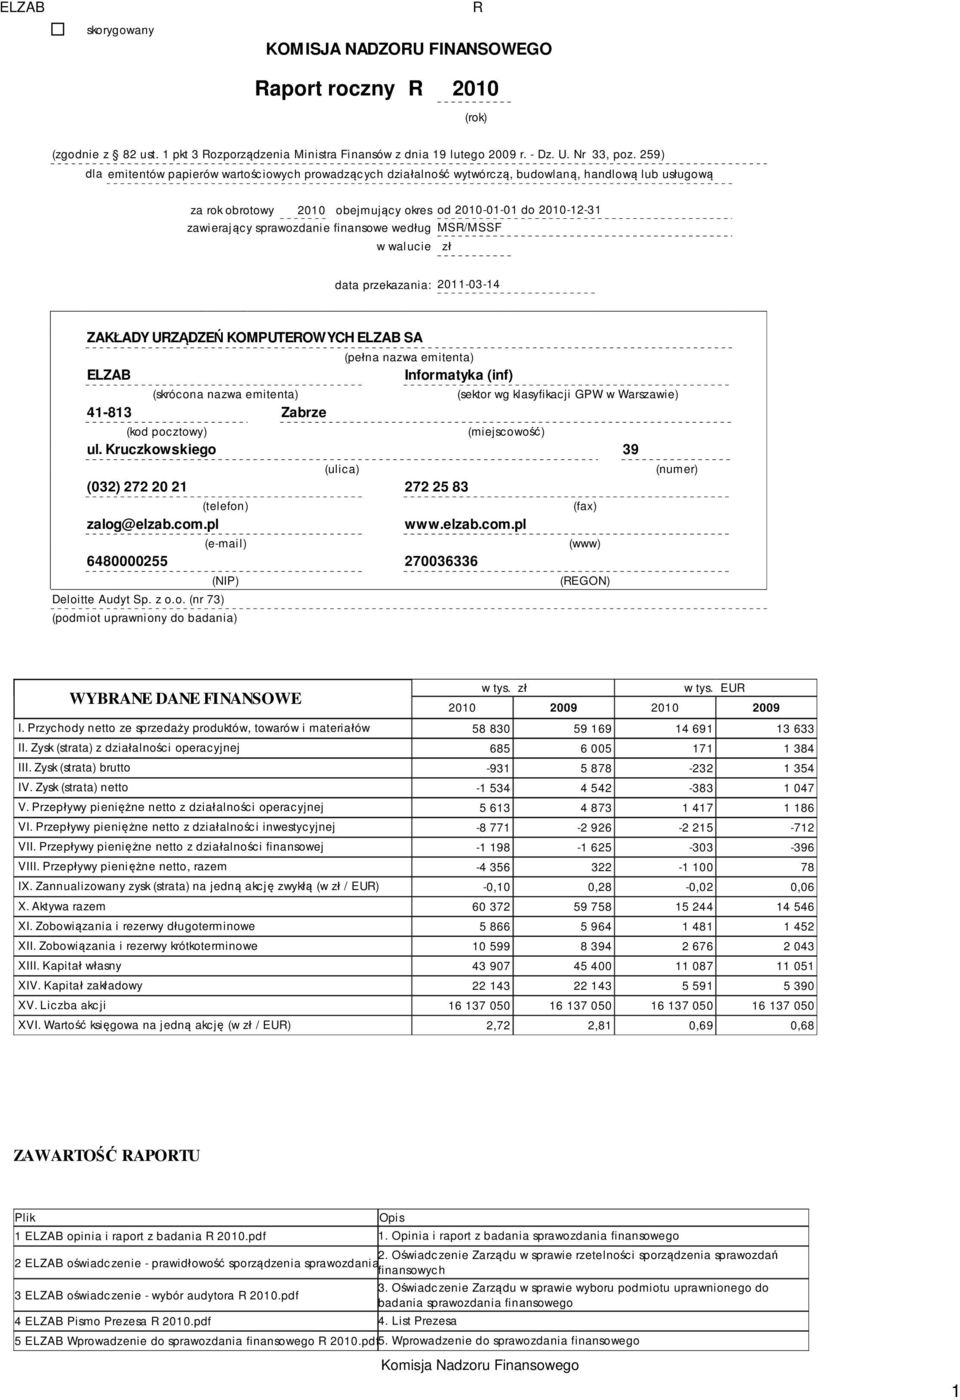 sprawozdanie finansowe według MSR/MSSF w walucie zł data przekazania: 2011-03-14 ZAKŁADY URZĄDZEŃ KOMPUTEROWYCH ELZAB SA ELZAB (skrócona nazwa emitenta) 41-813 Zabrze (pełna nazwa emitenta)